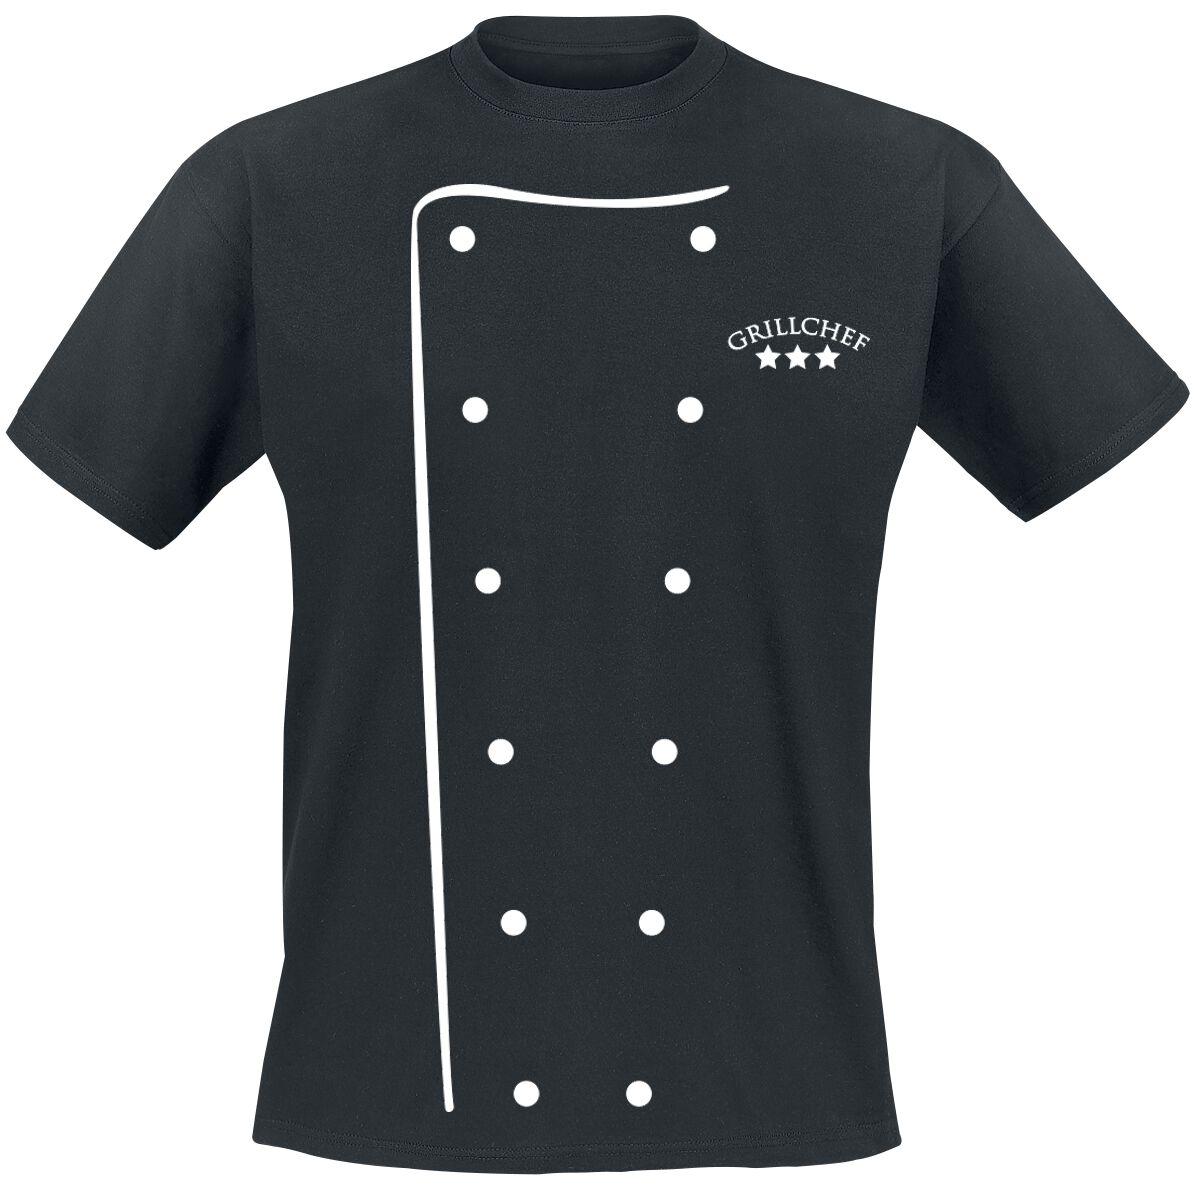 Food Grillchef T-Shirt schwarz in M